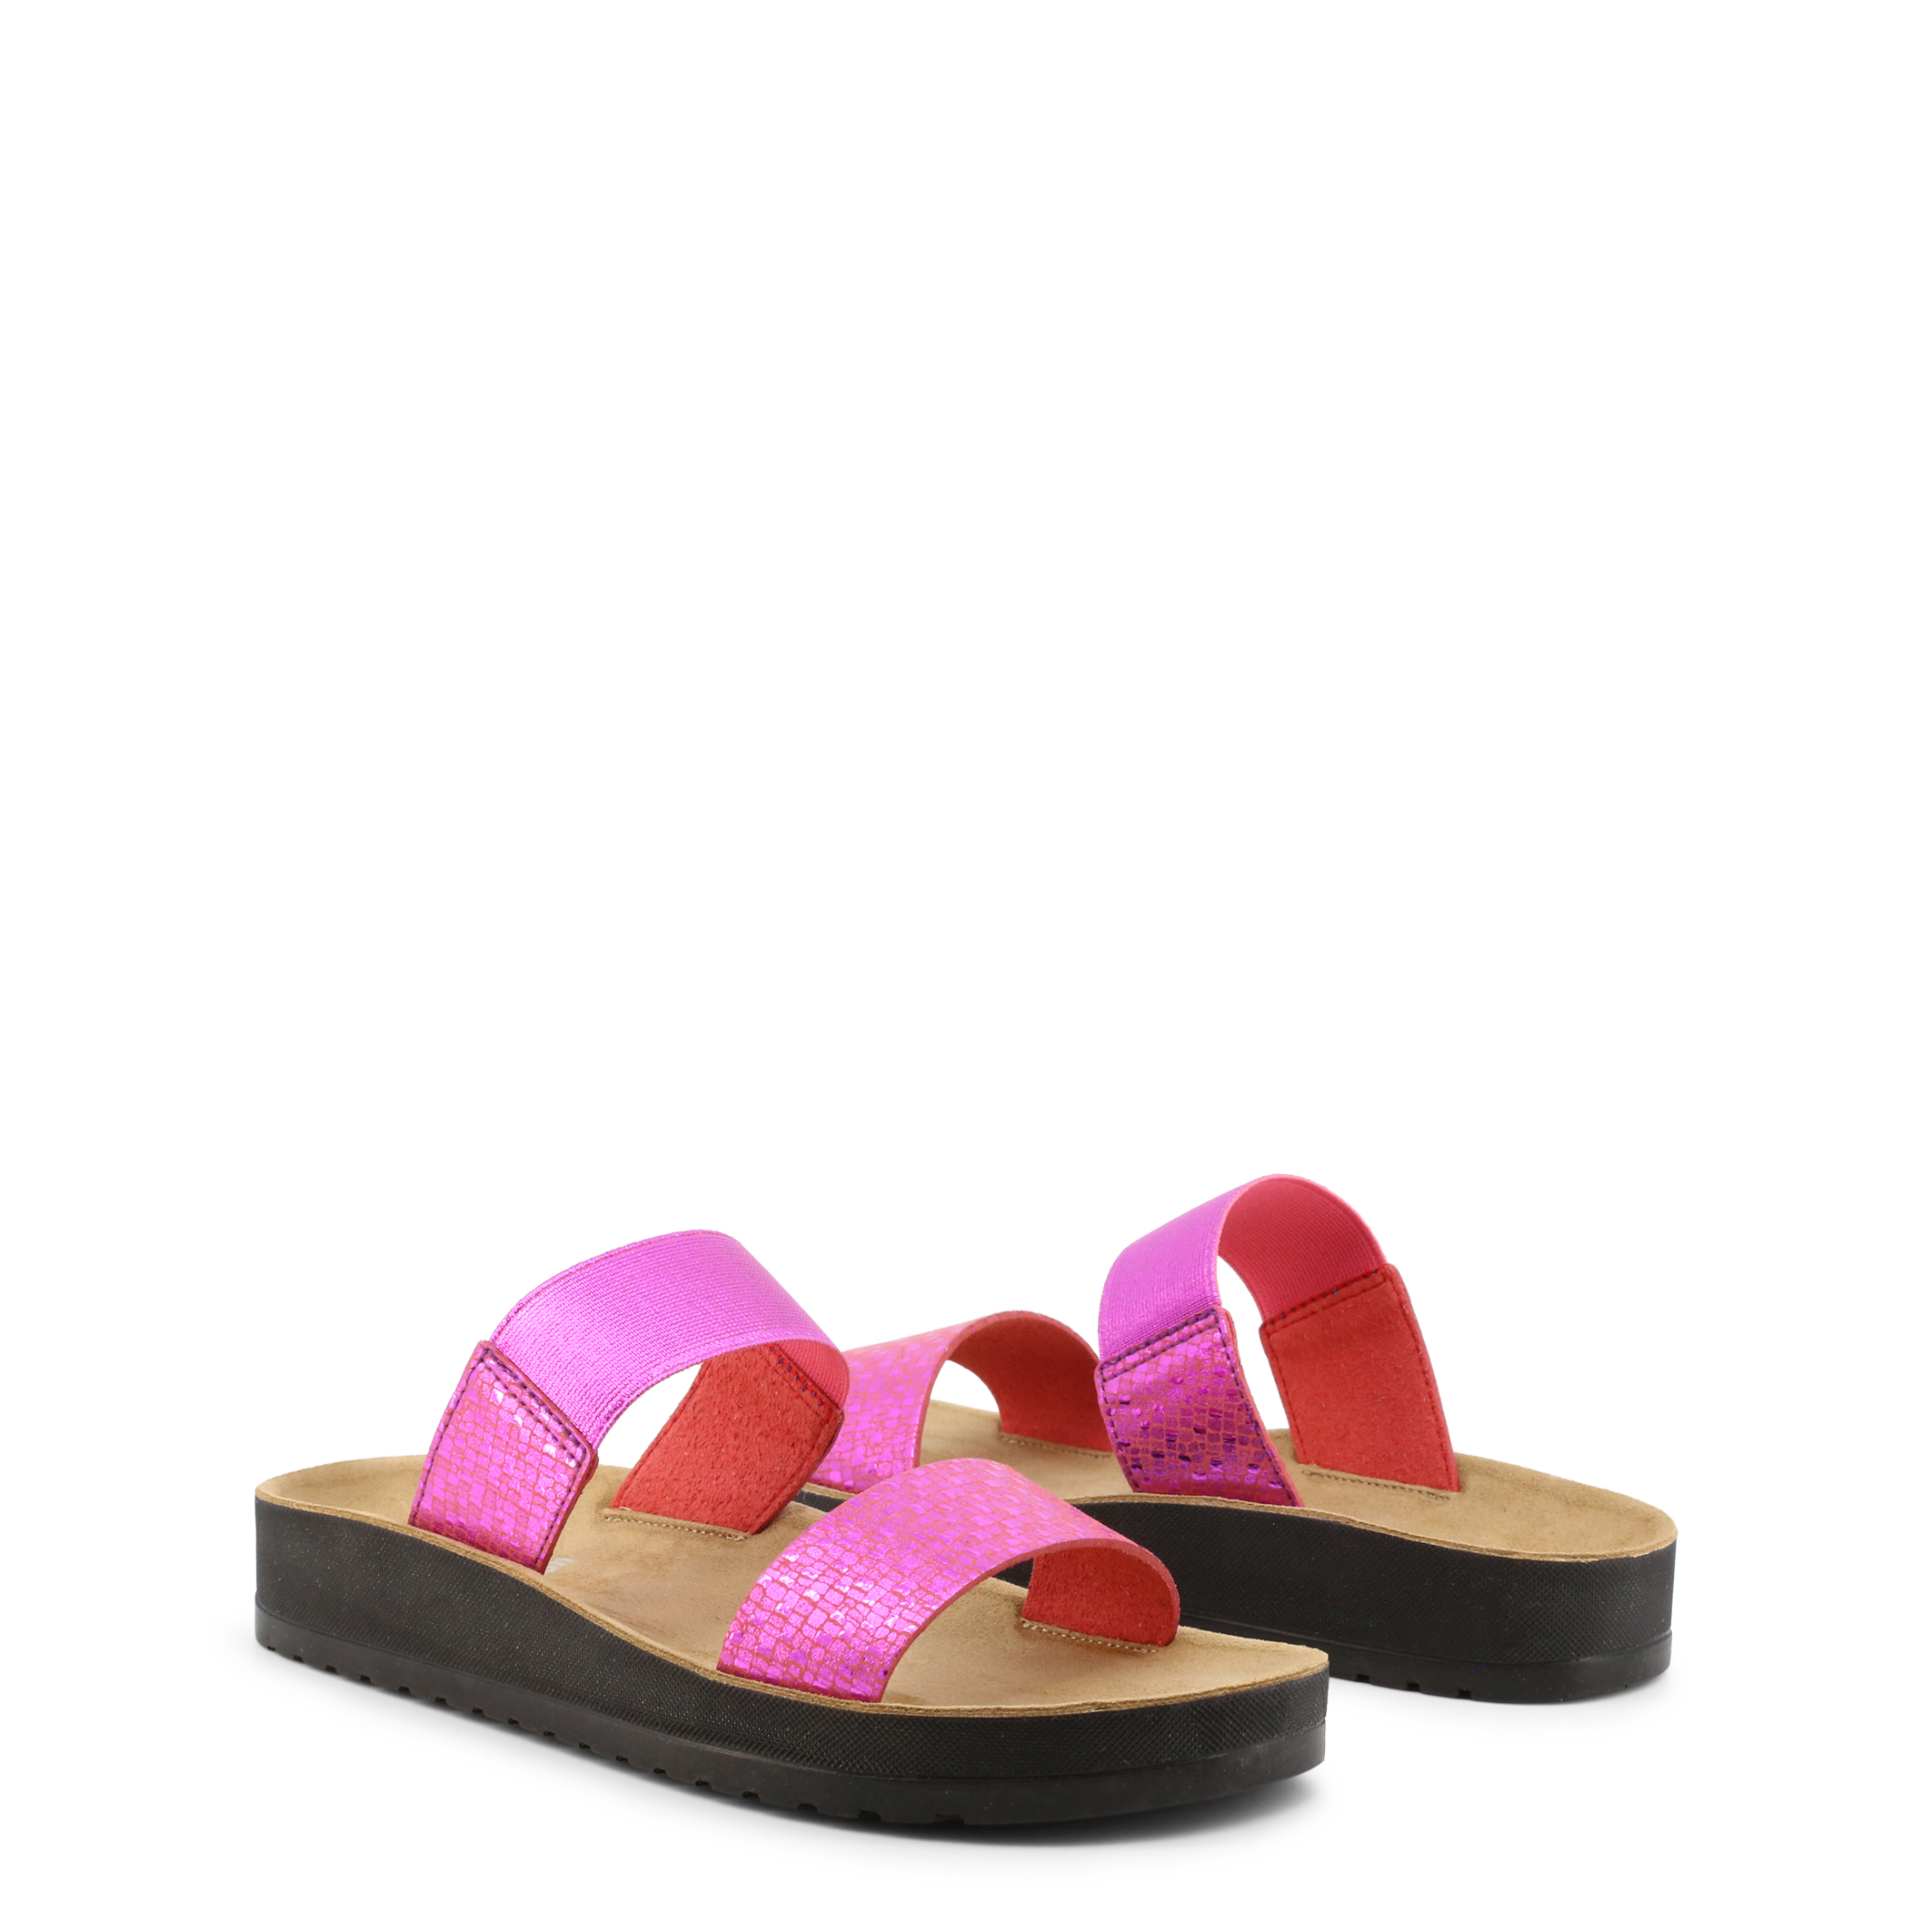 Dr Scholl Pink Flip Flops for Women - GAIA-F29269